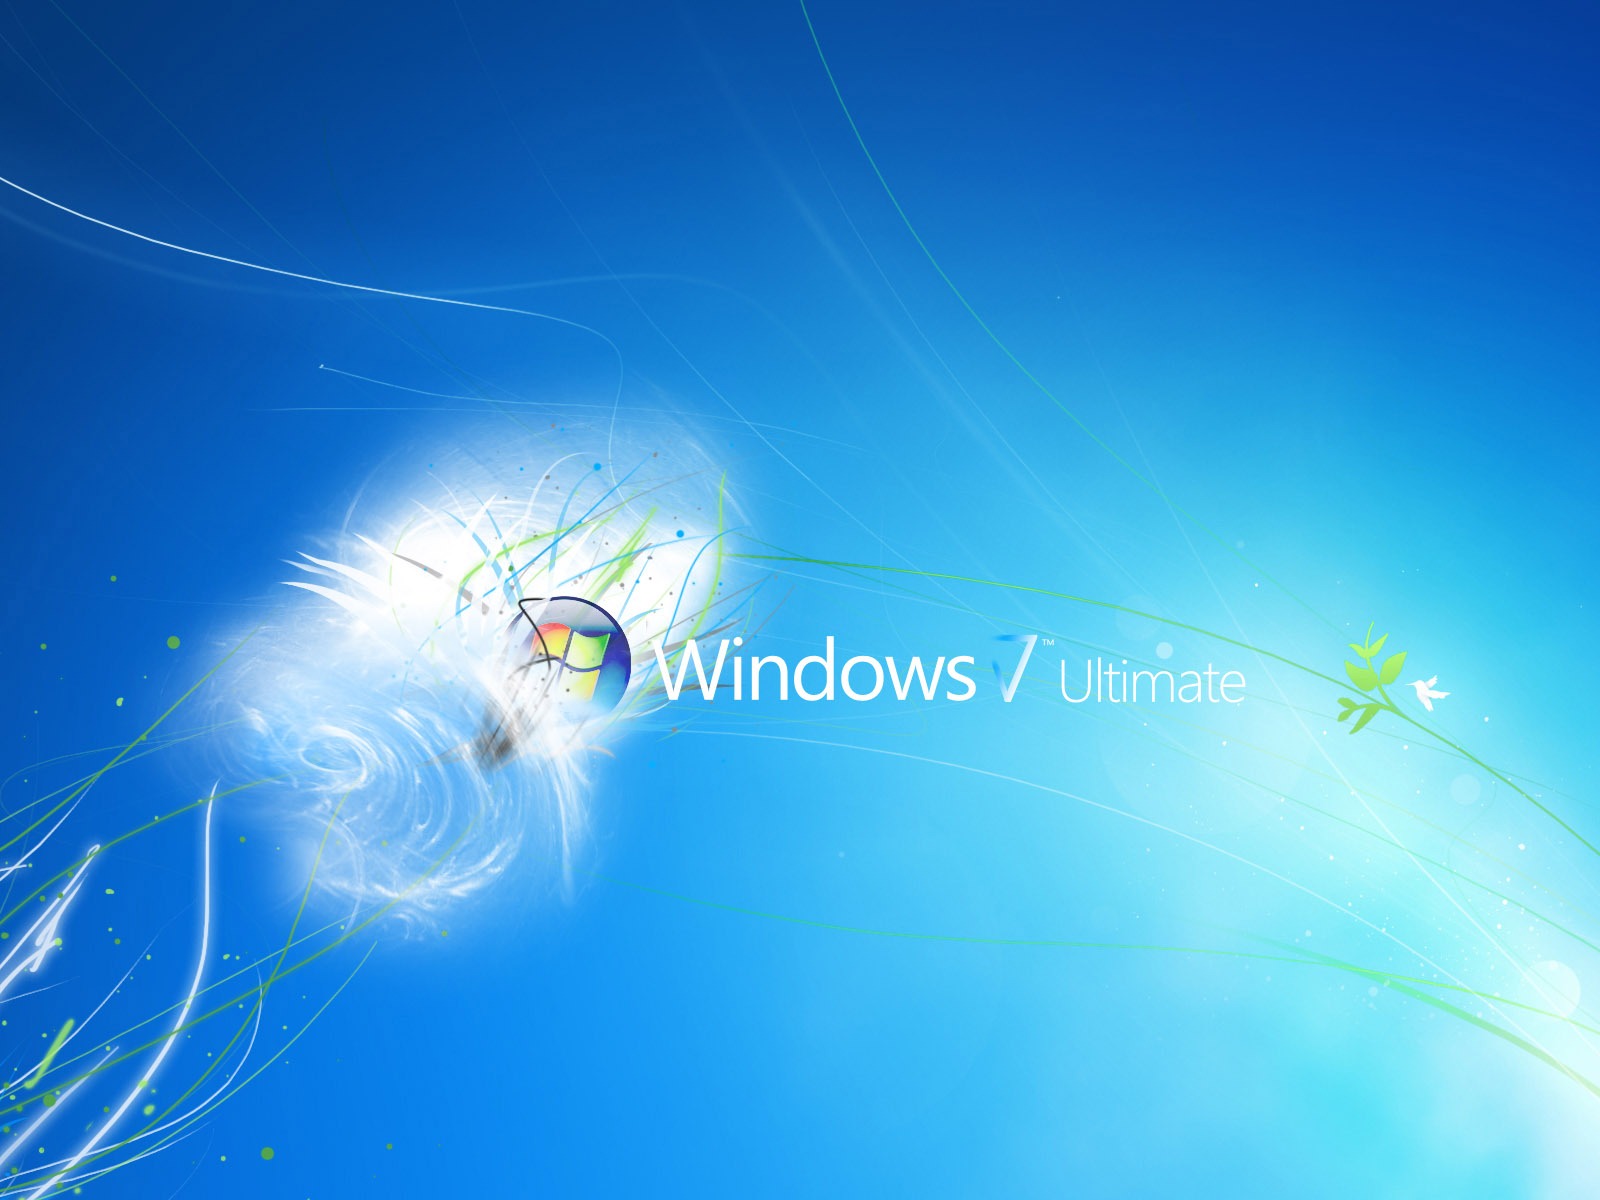 Windows7 theme wallpaper (2) #11 - 1600x1200